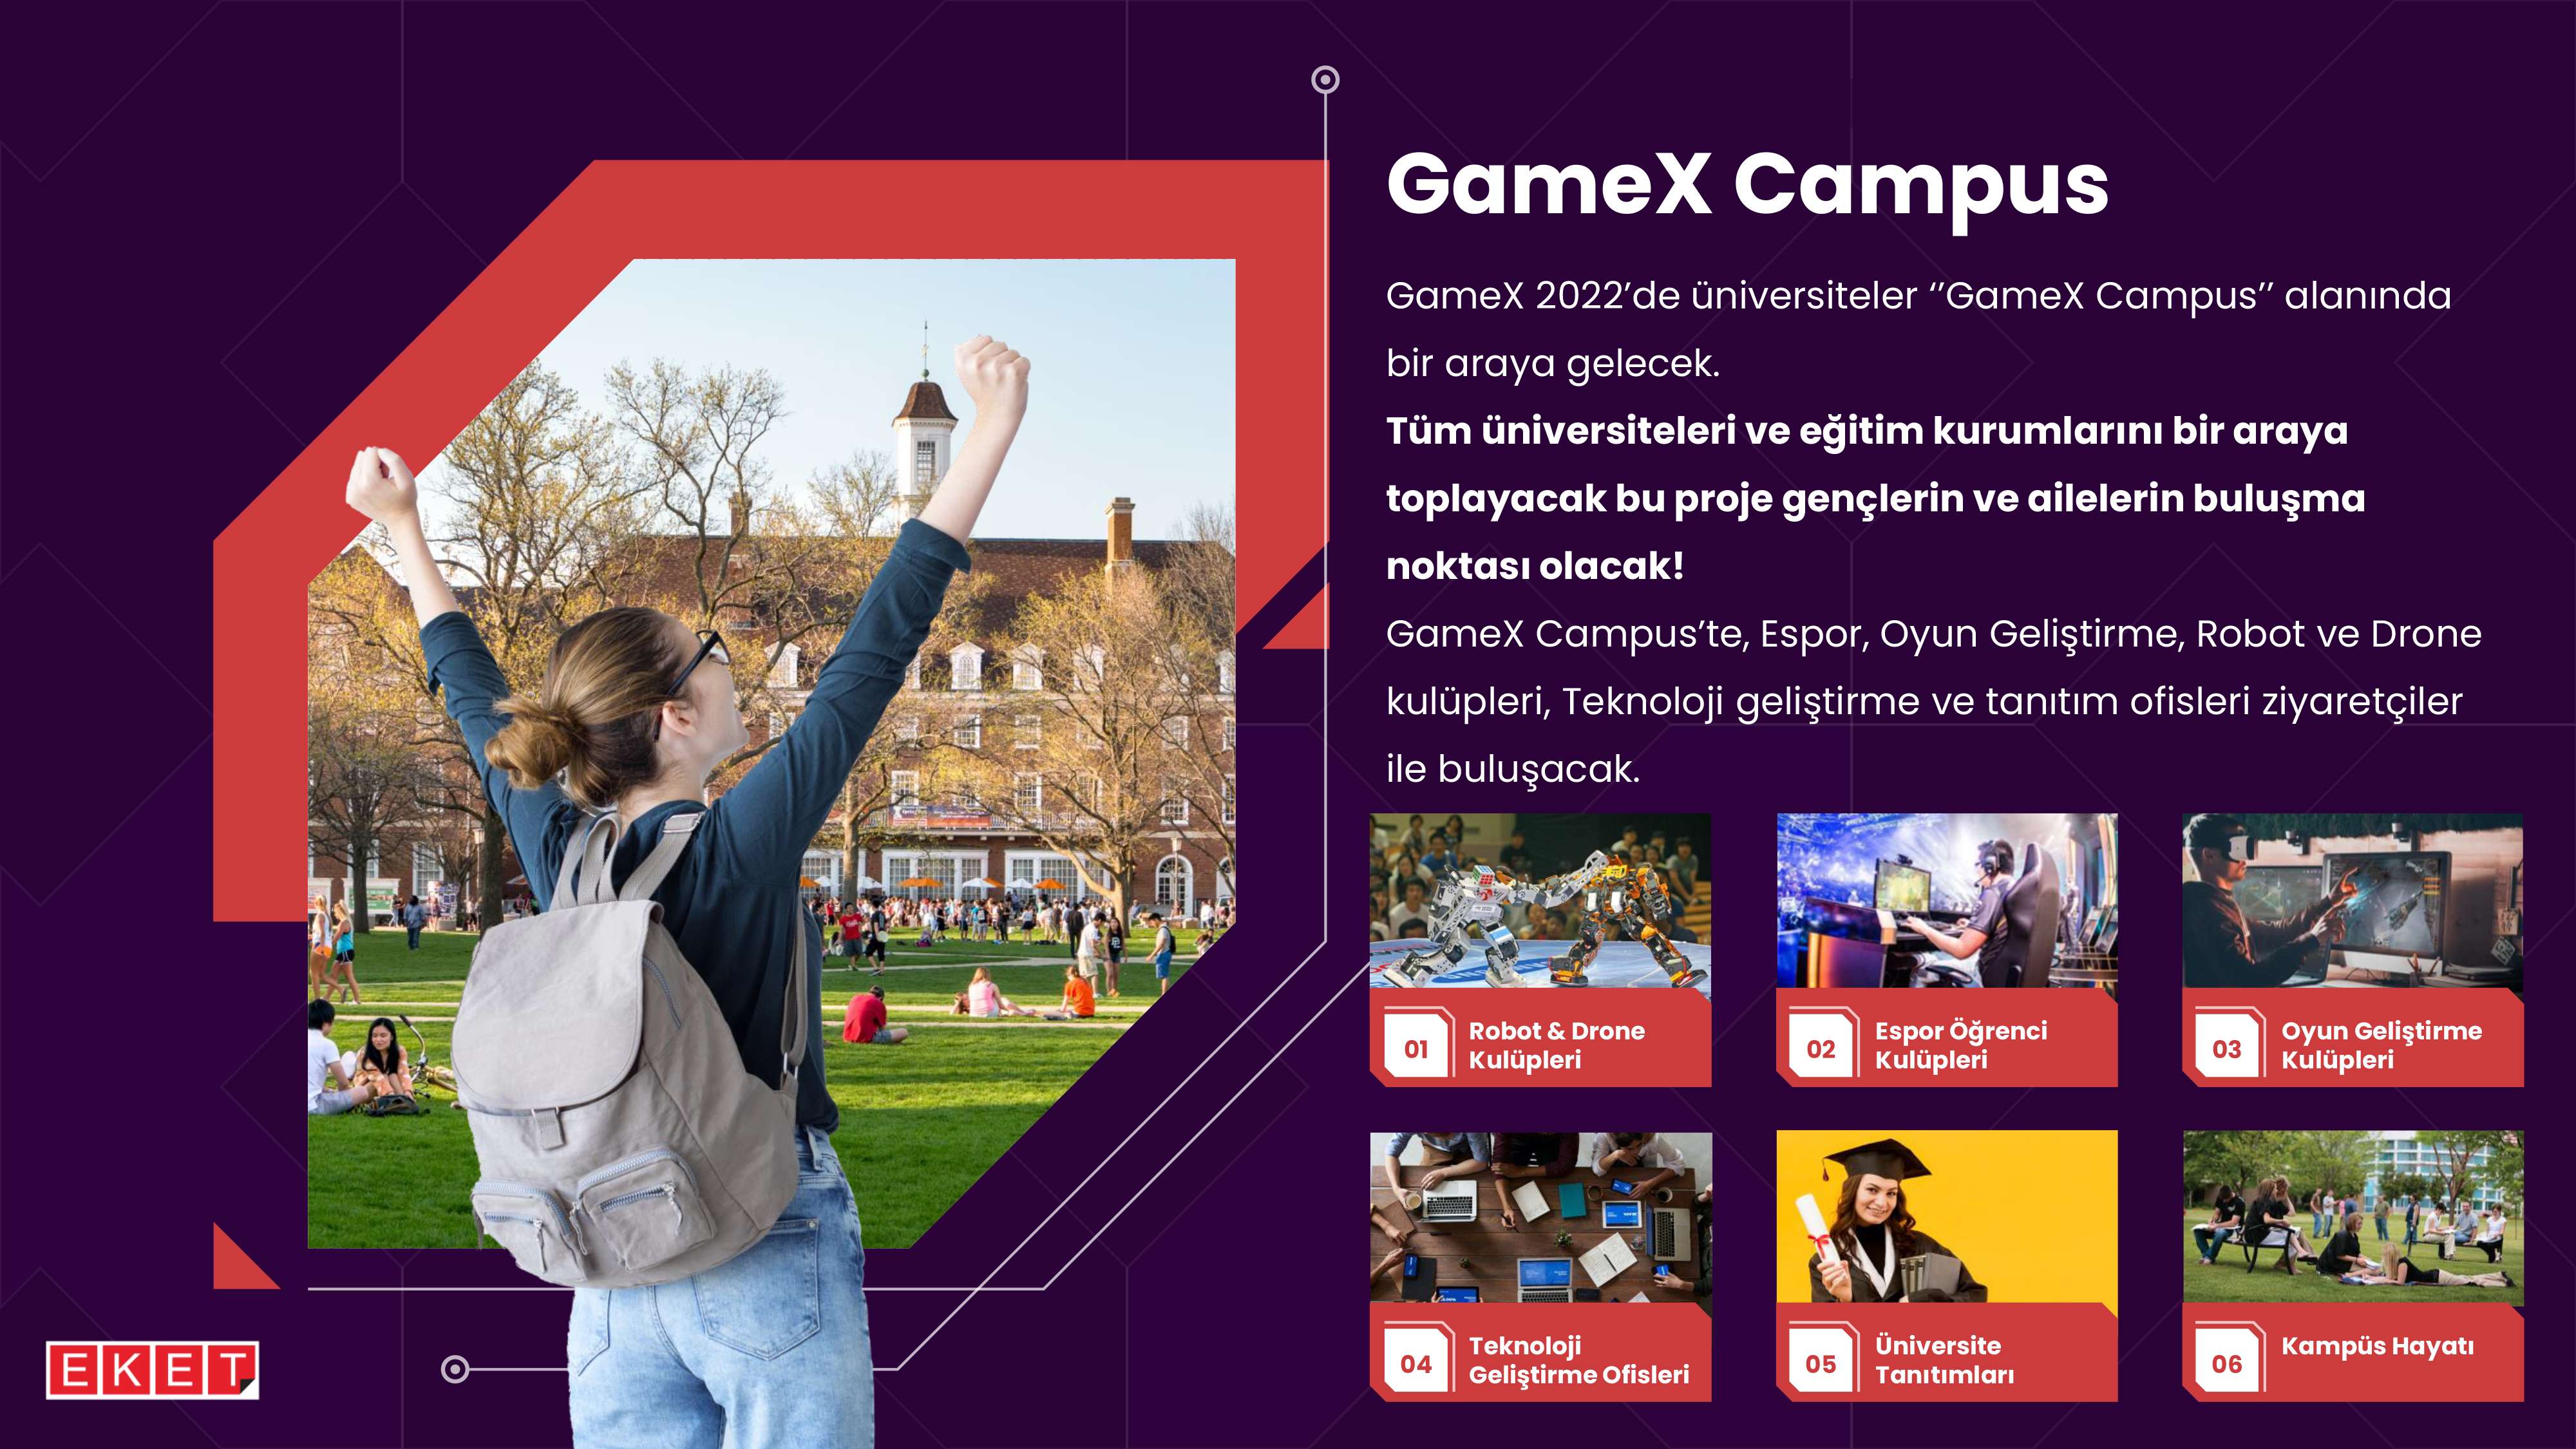 GameX ve Eket Fuarcılık İşbirliğinde “GameX Campus” Duyuruldu!